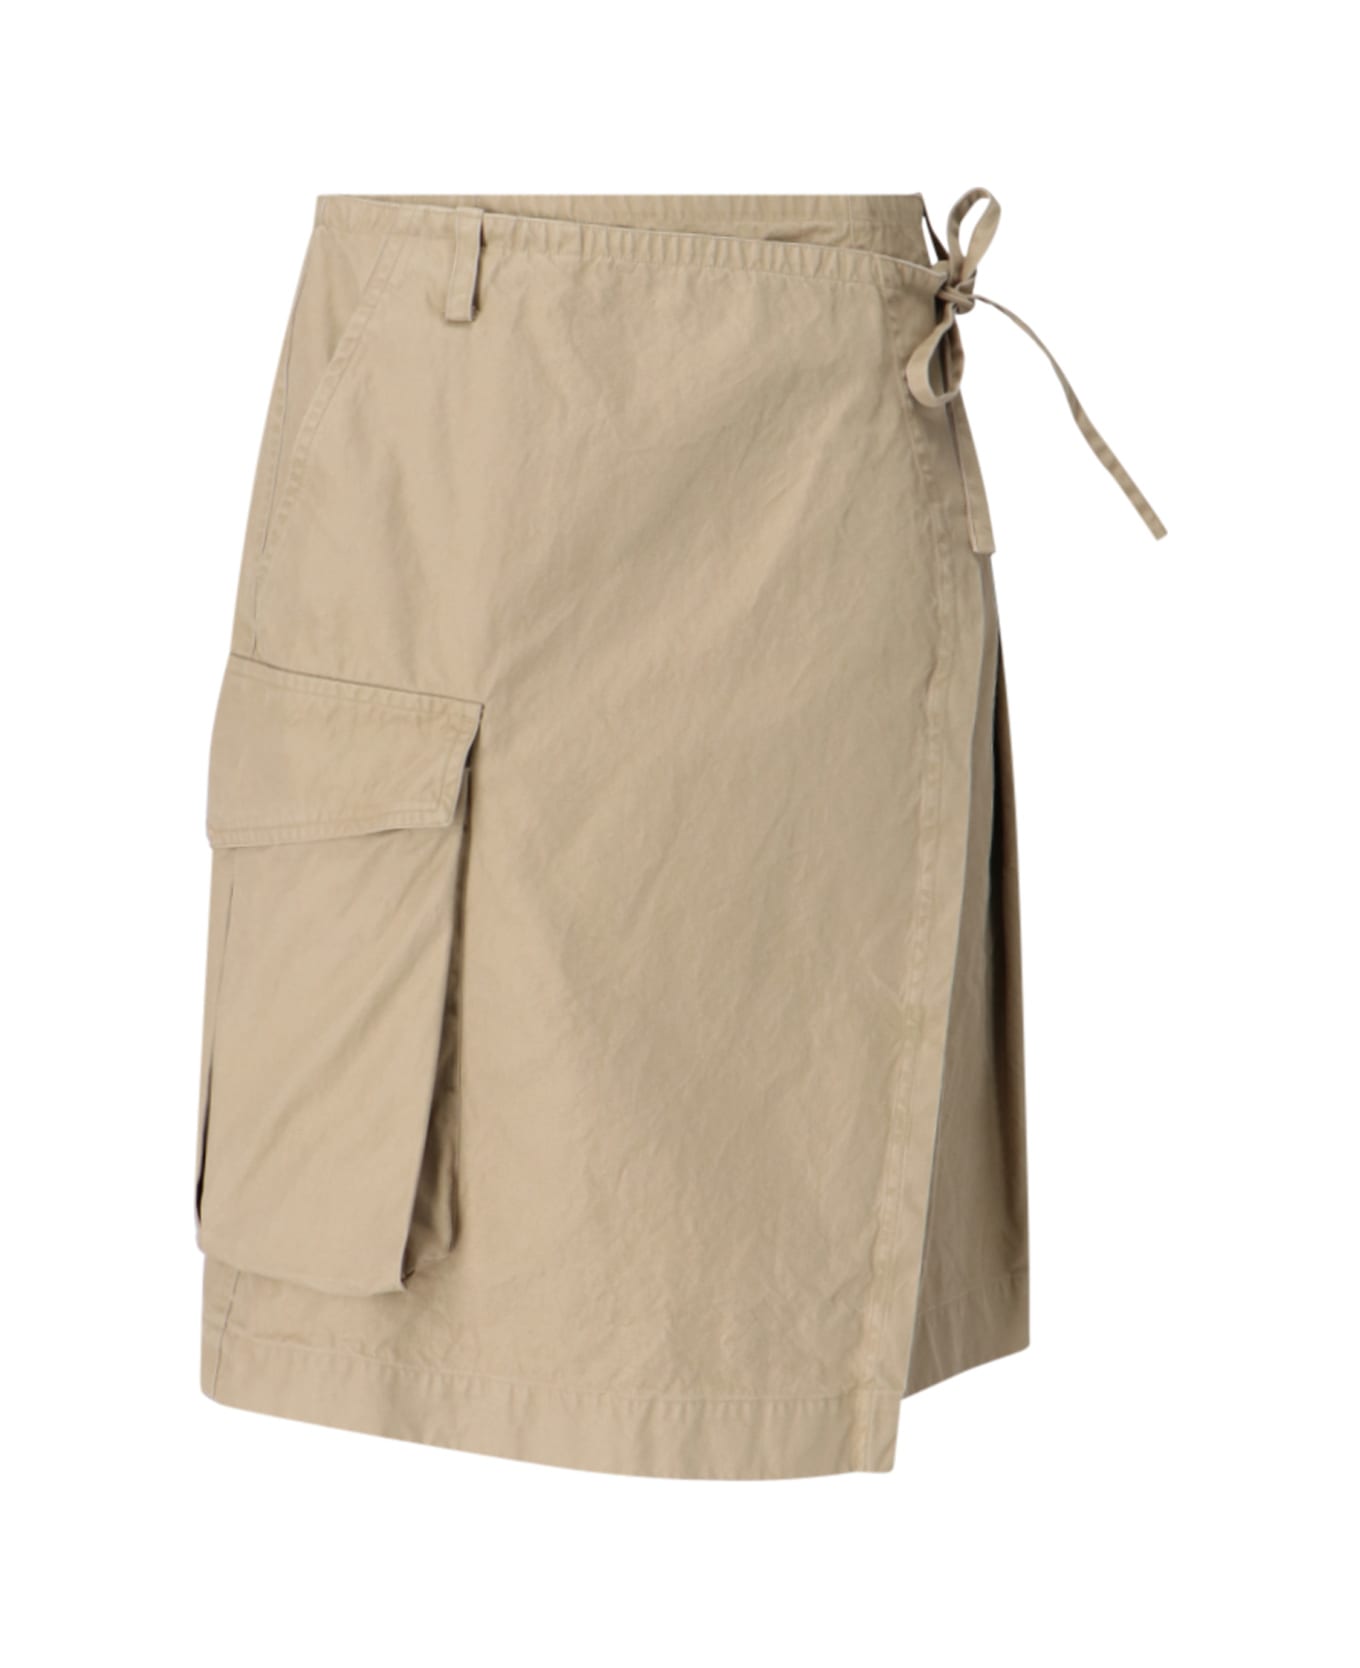 Dries Van Noten Kilt Design Skirt - Beige